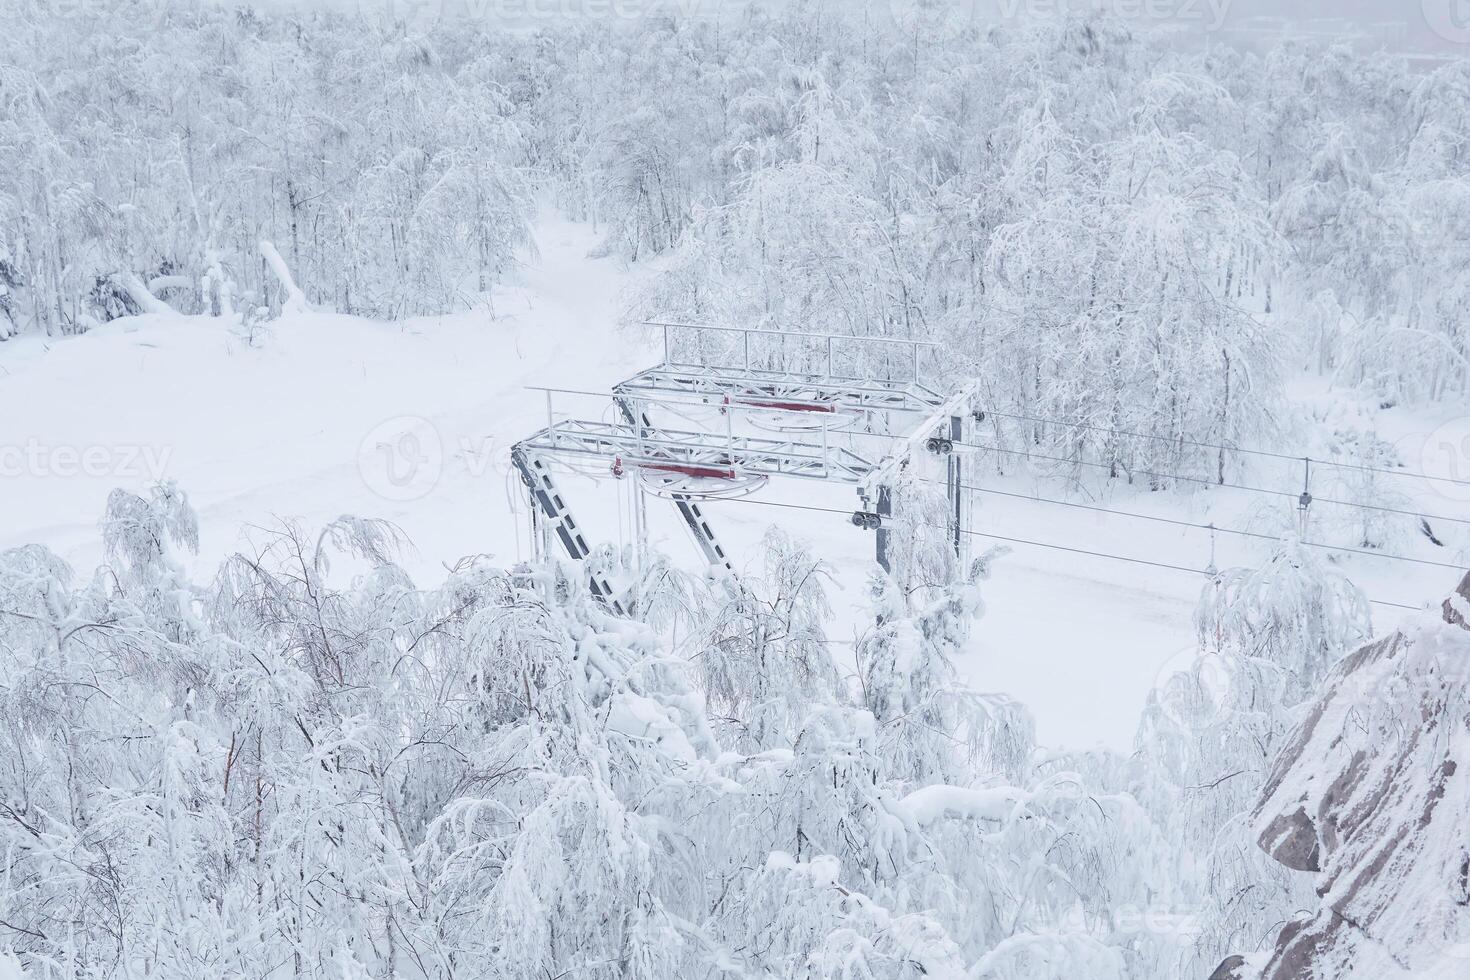 slutet station av de åka skidor hiss på en snötäckt kulle bland frostig träd foto